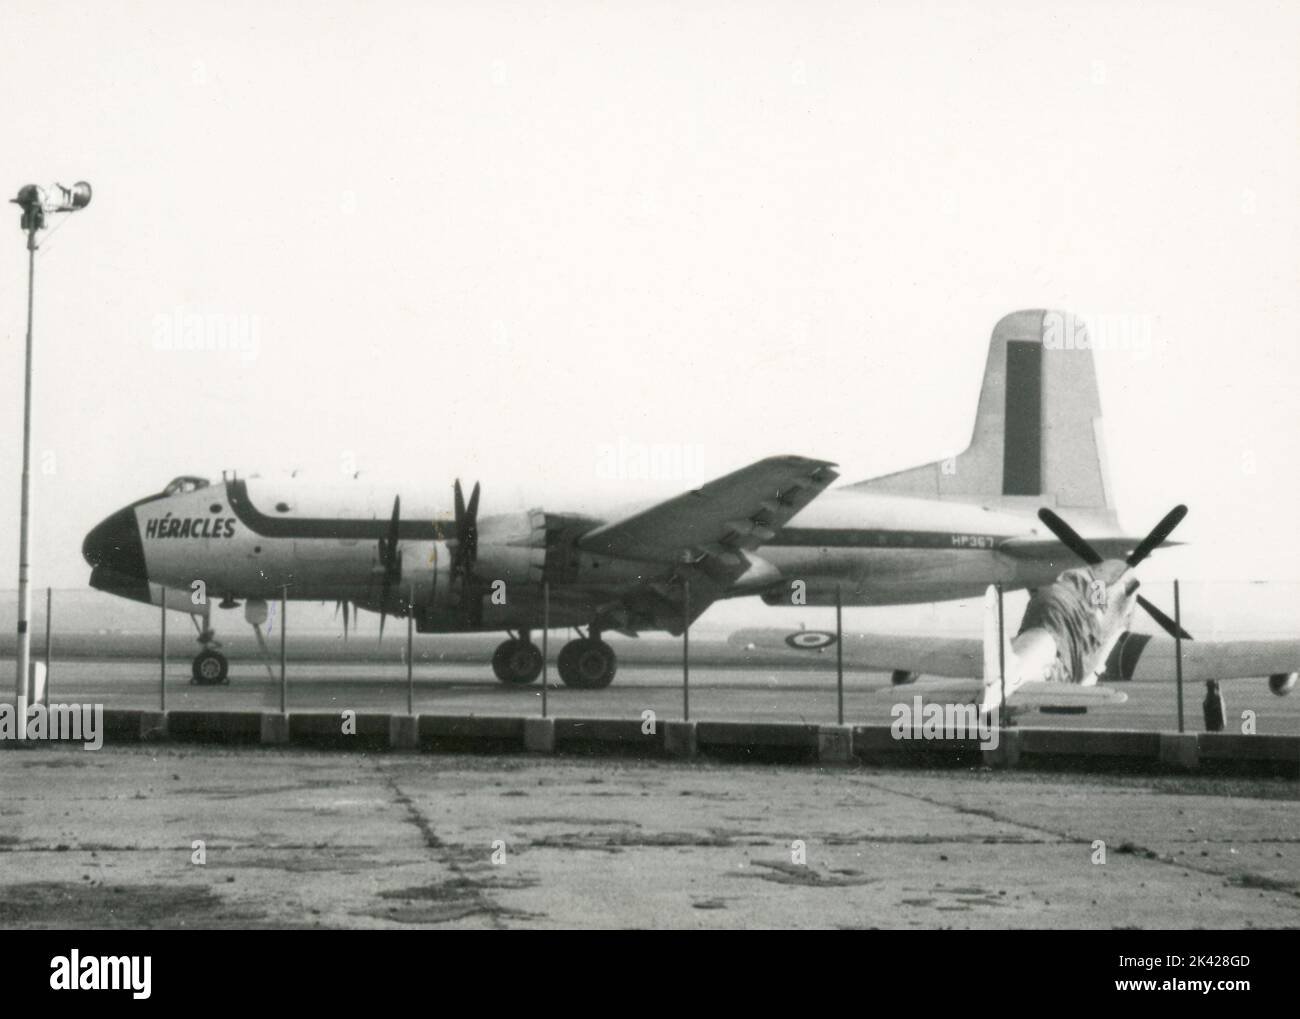 Avion de transport à charge lourde Douglas C-74 Globemaster Heracles, aéroport de Caselle, Turin, Italie 1963 Banque D'Images